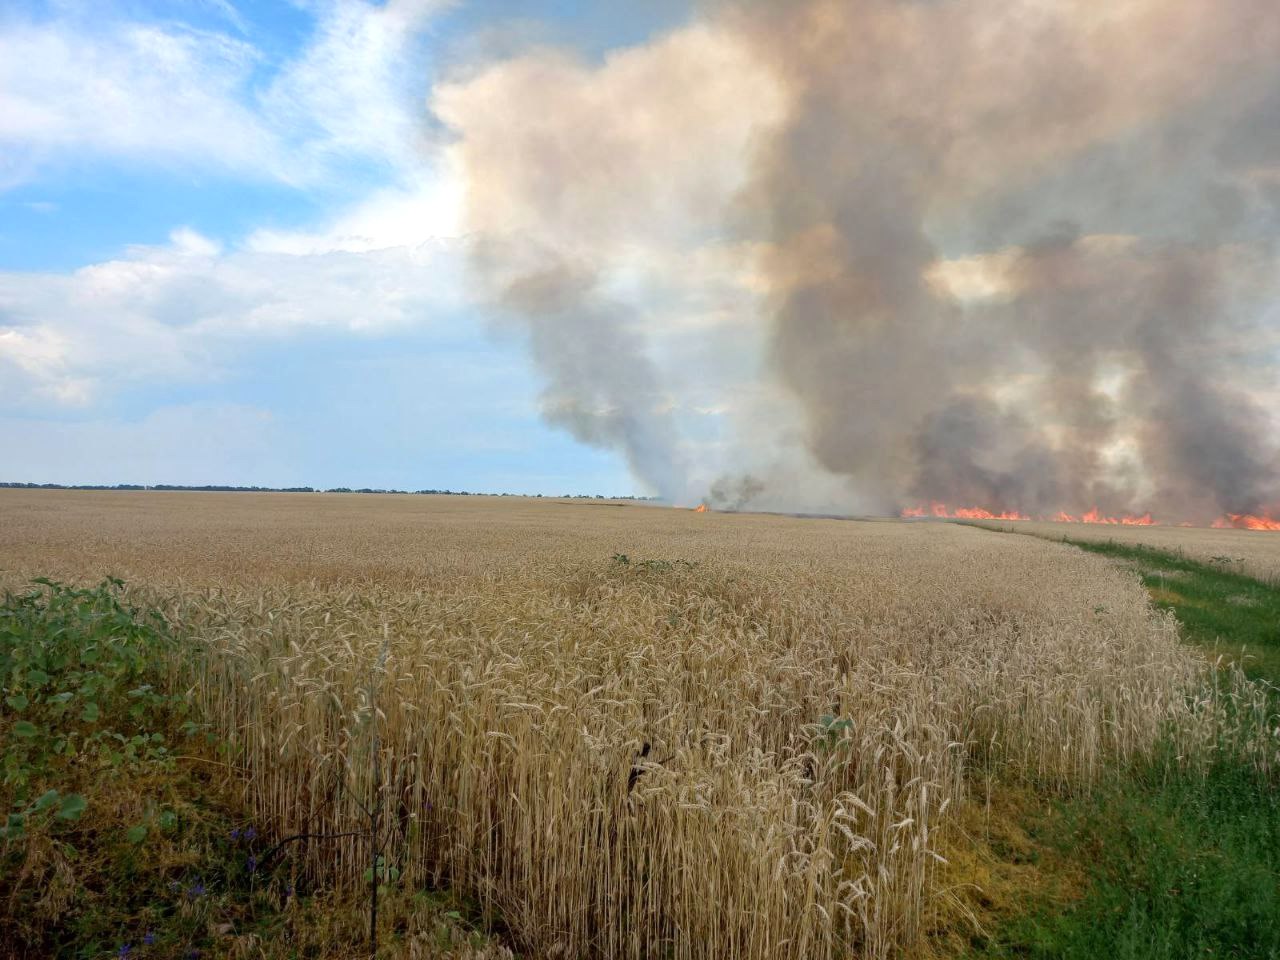 Bild: Main Directorate of the State Emergency Service of Ukraine in Kharkiv Oblast, Burning field near Andriivka, 2022-07-05 (03), CC BY 4.0, via Wikimedia Commons, (keine Änderungen vorgenommen)